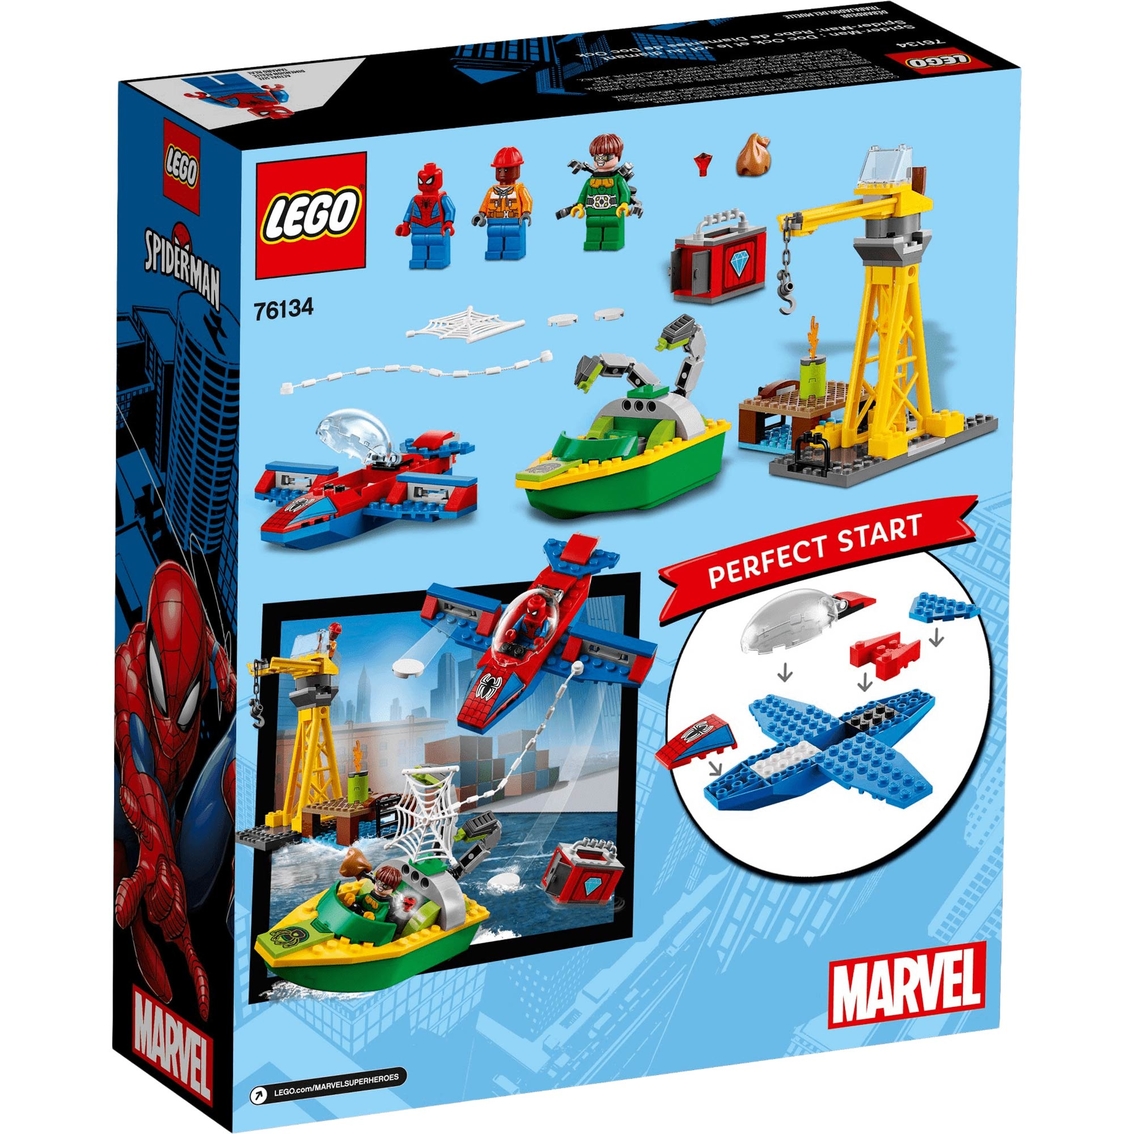 LEGO Marvel Super Heroes Spider-Man: Doc Ock Diamond Heist - Image 2 of 4